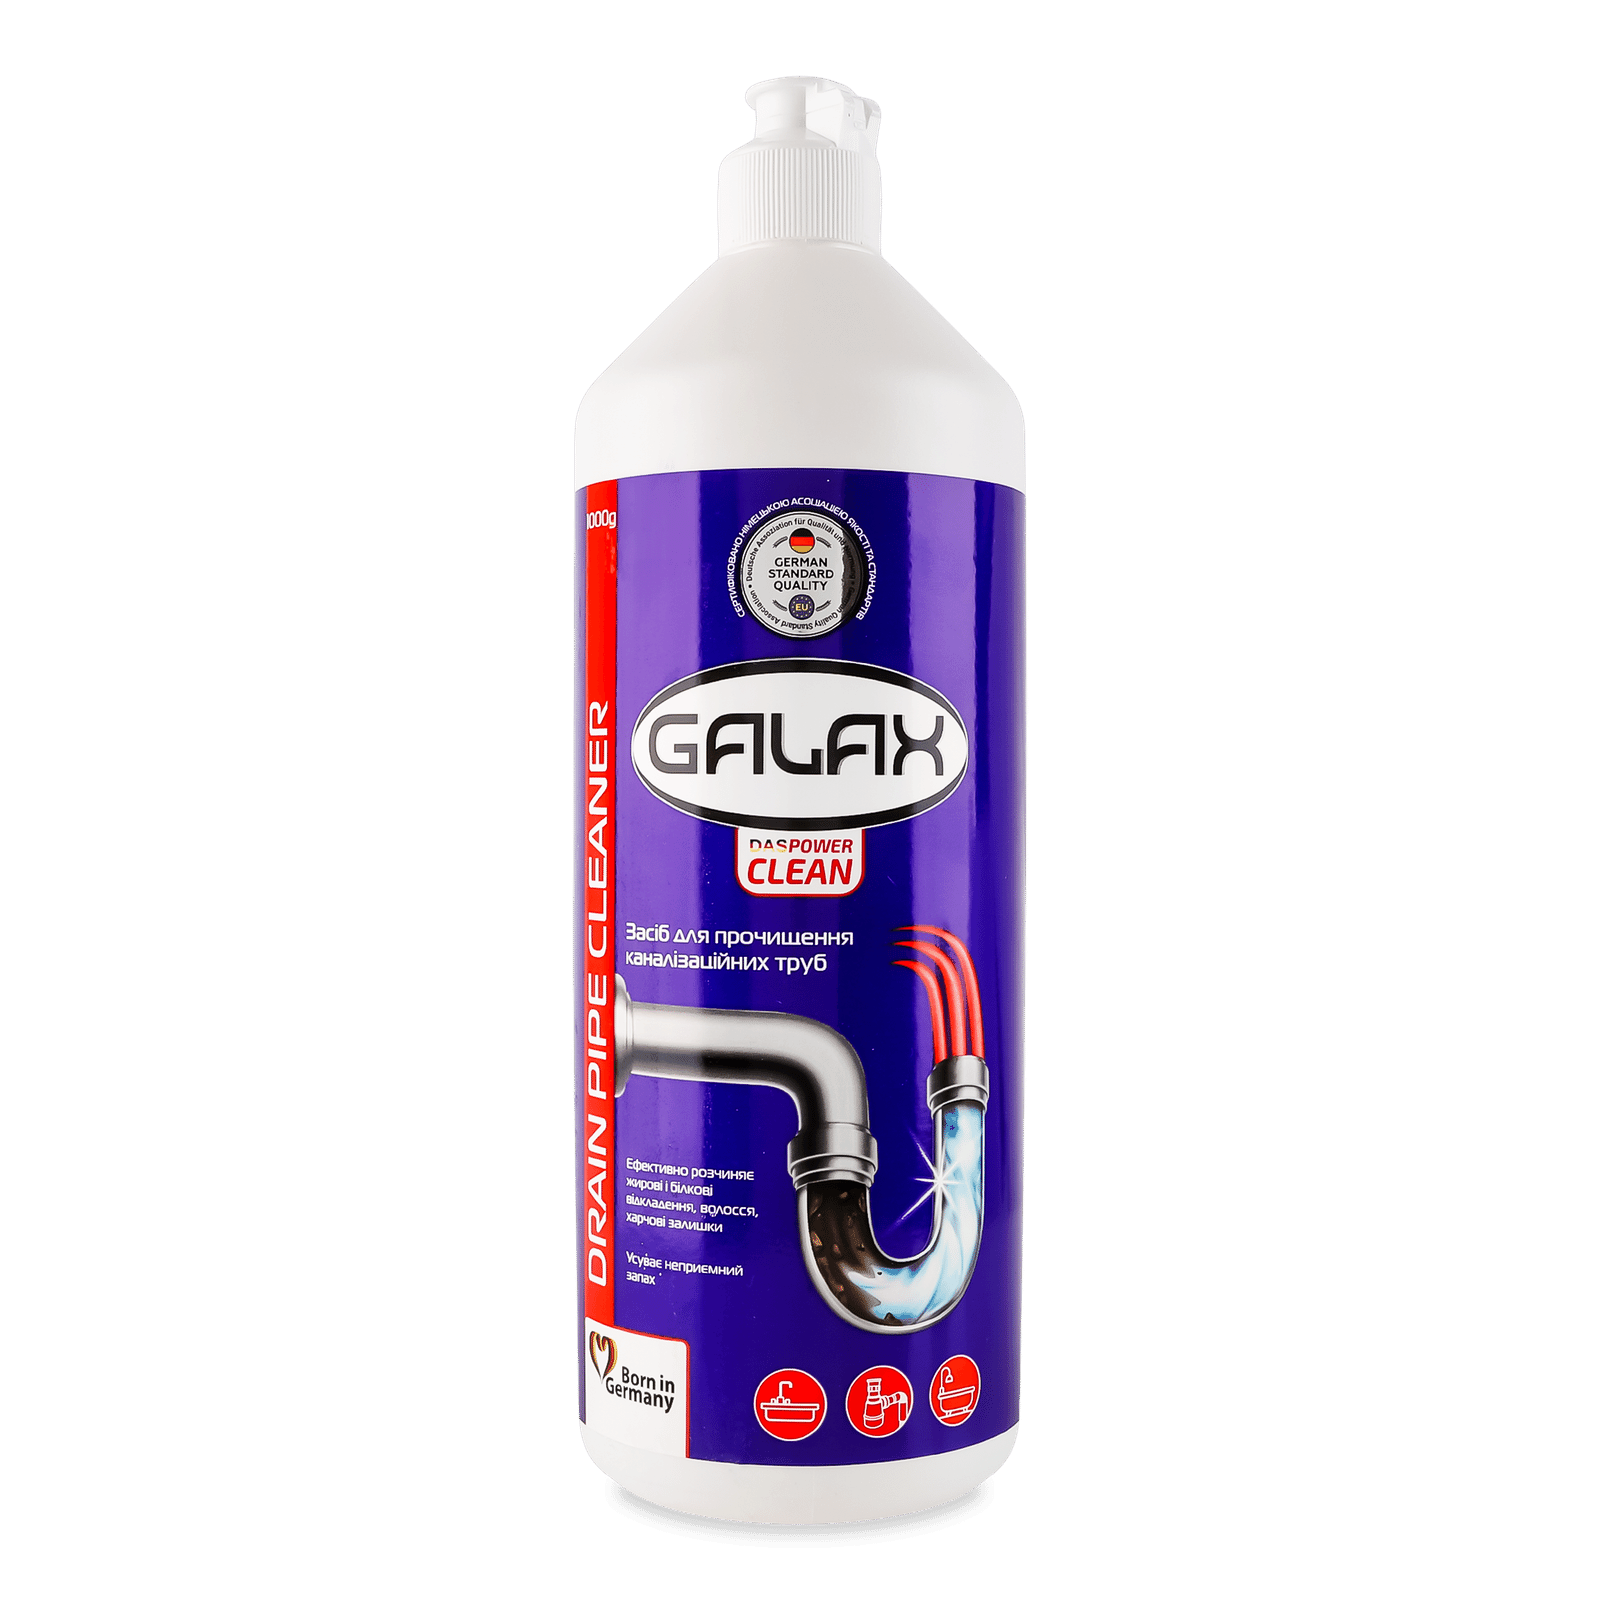 Засіб для прочищення труб Galax das Power Clean - 1